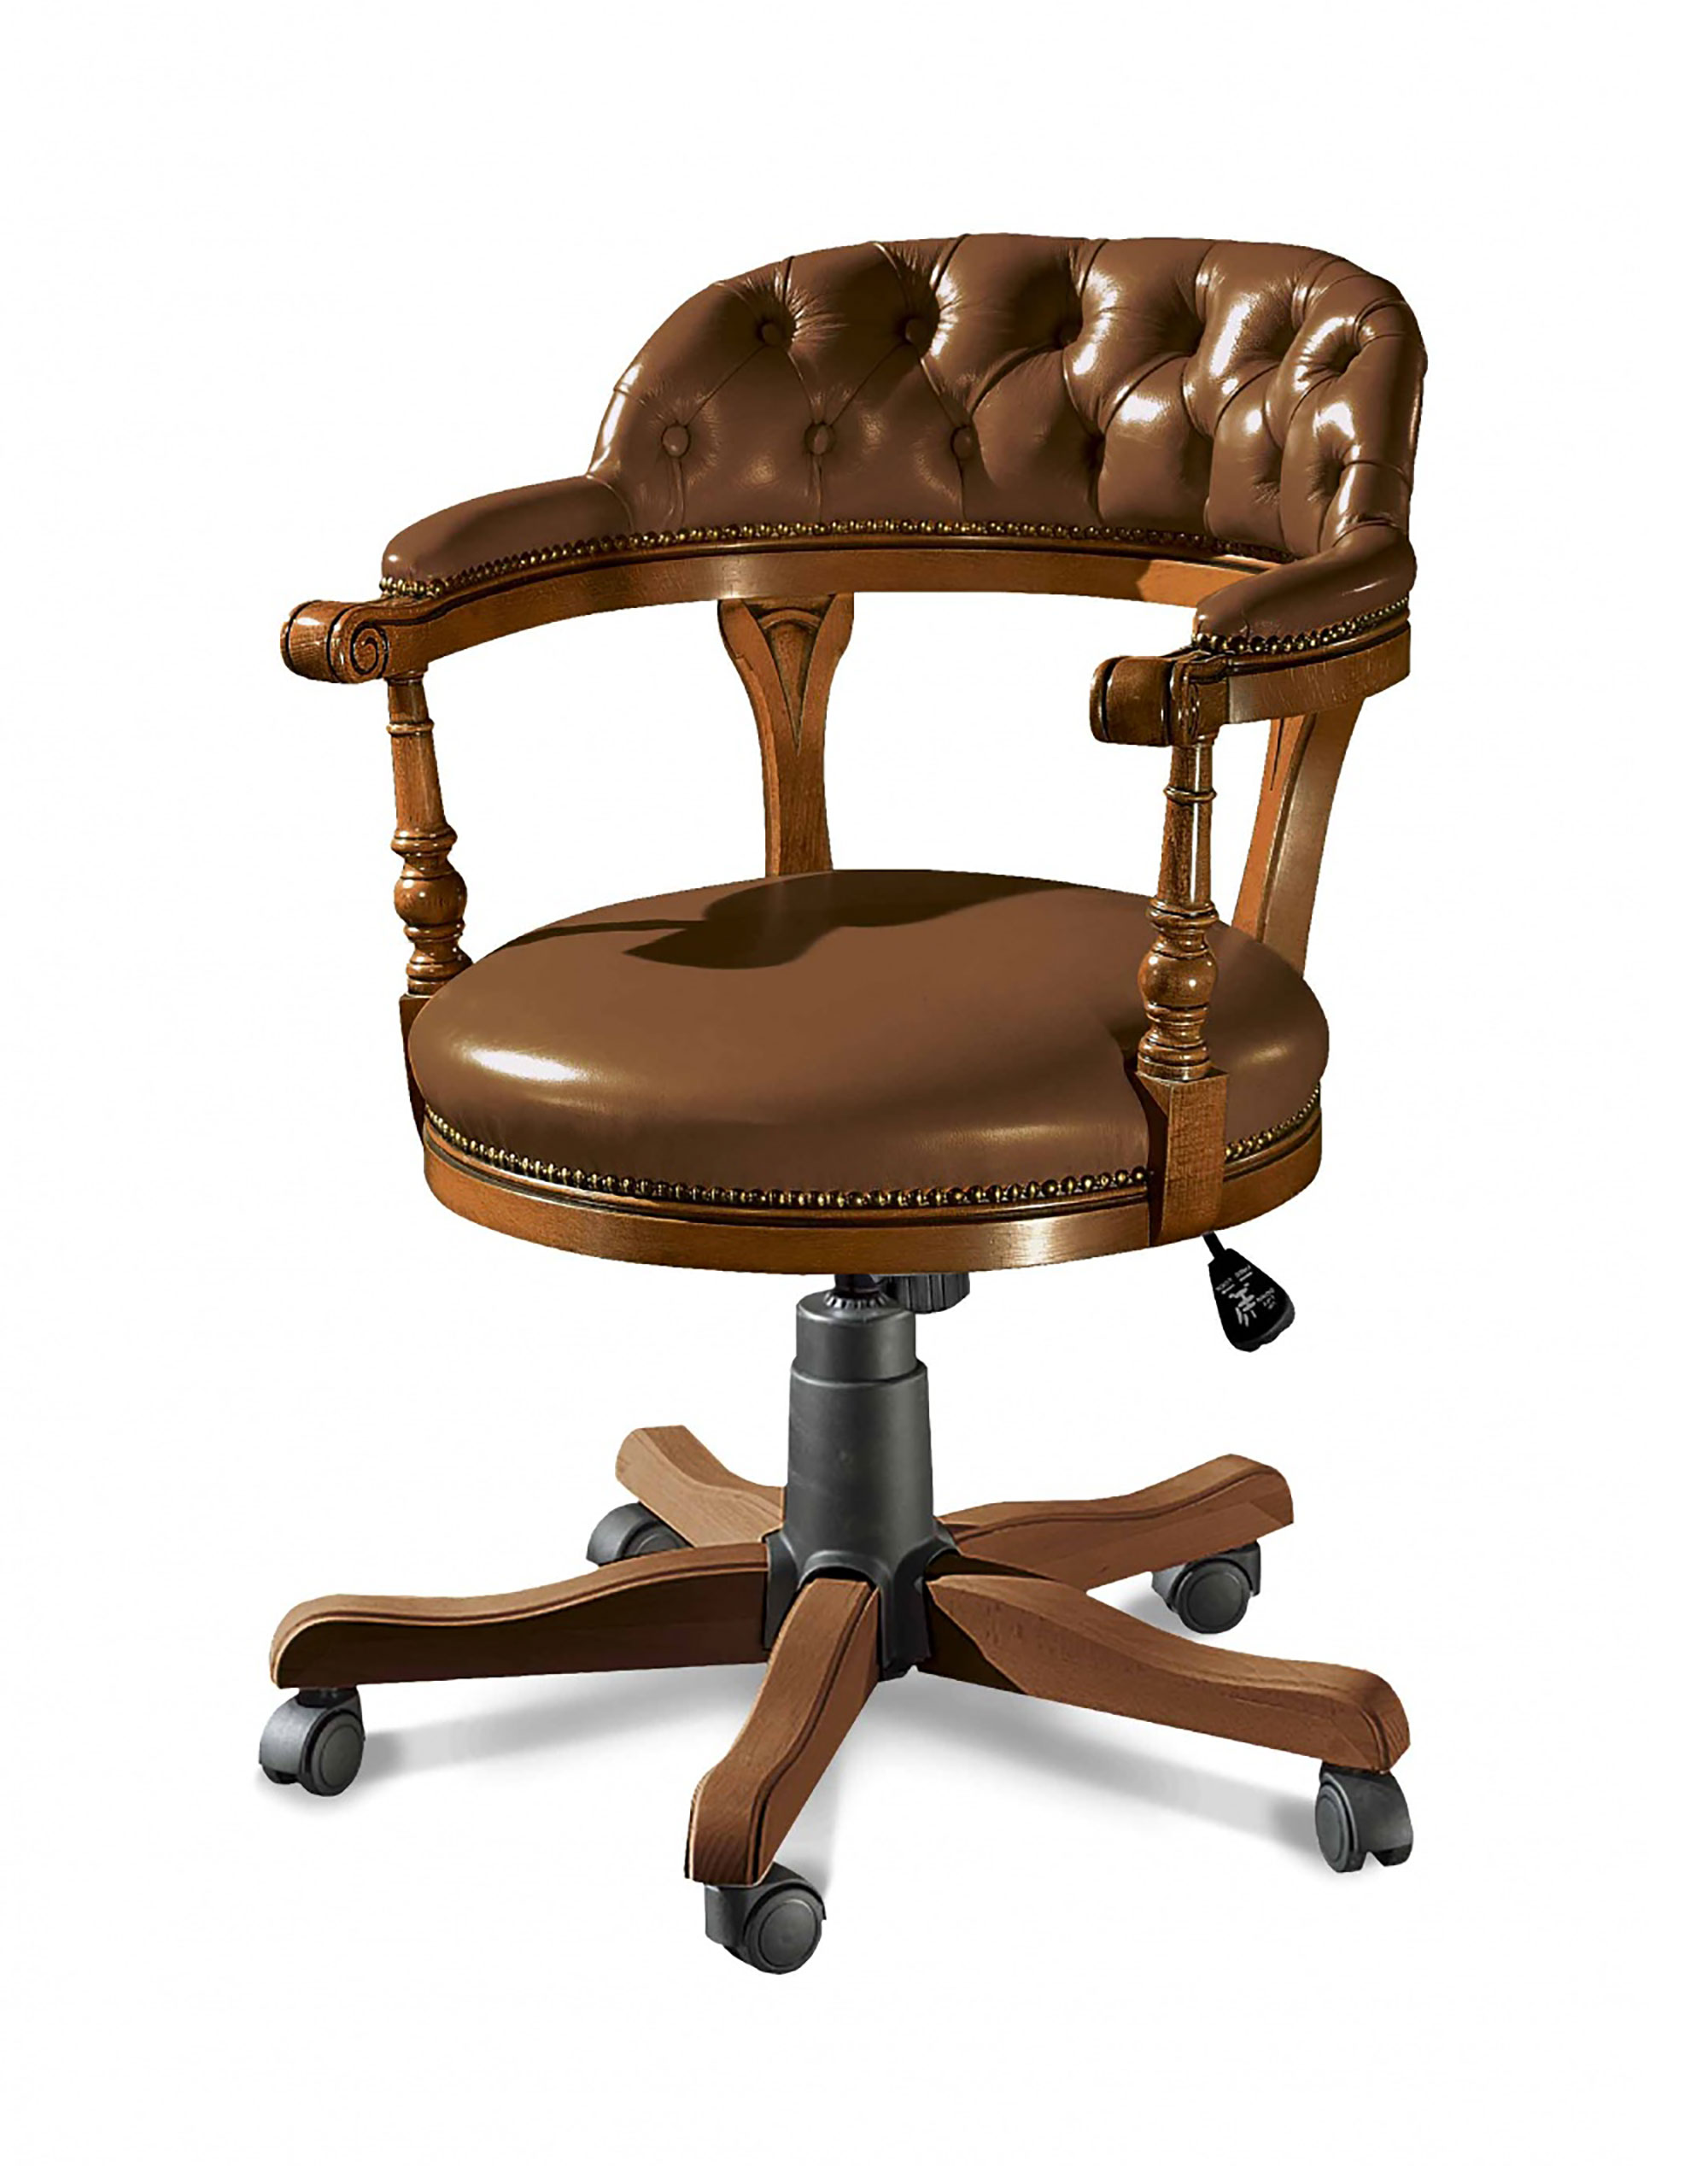 Poltrona girevole da ufficio in legno massello resa comoda e funzionale grazie alla regolazione in altezza della seduta